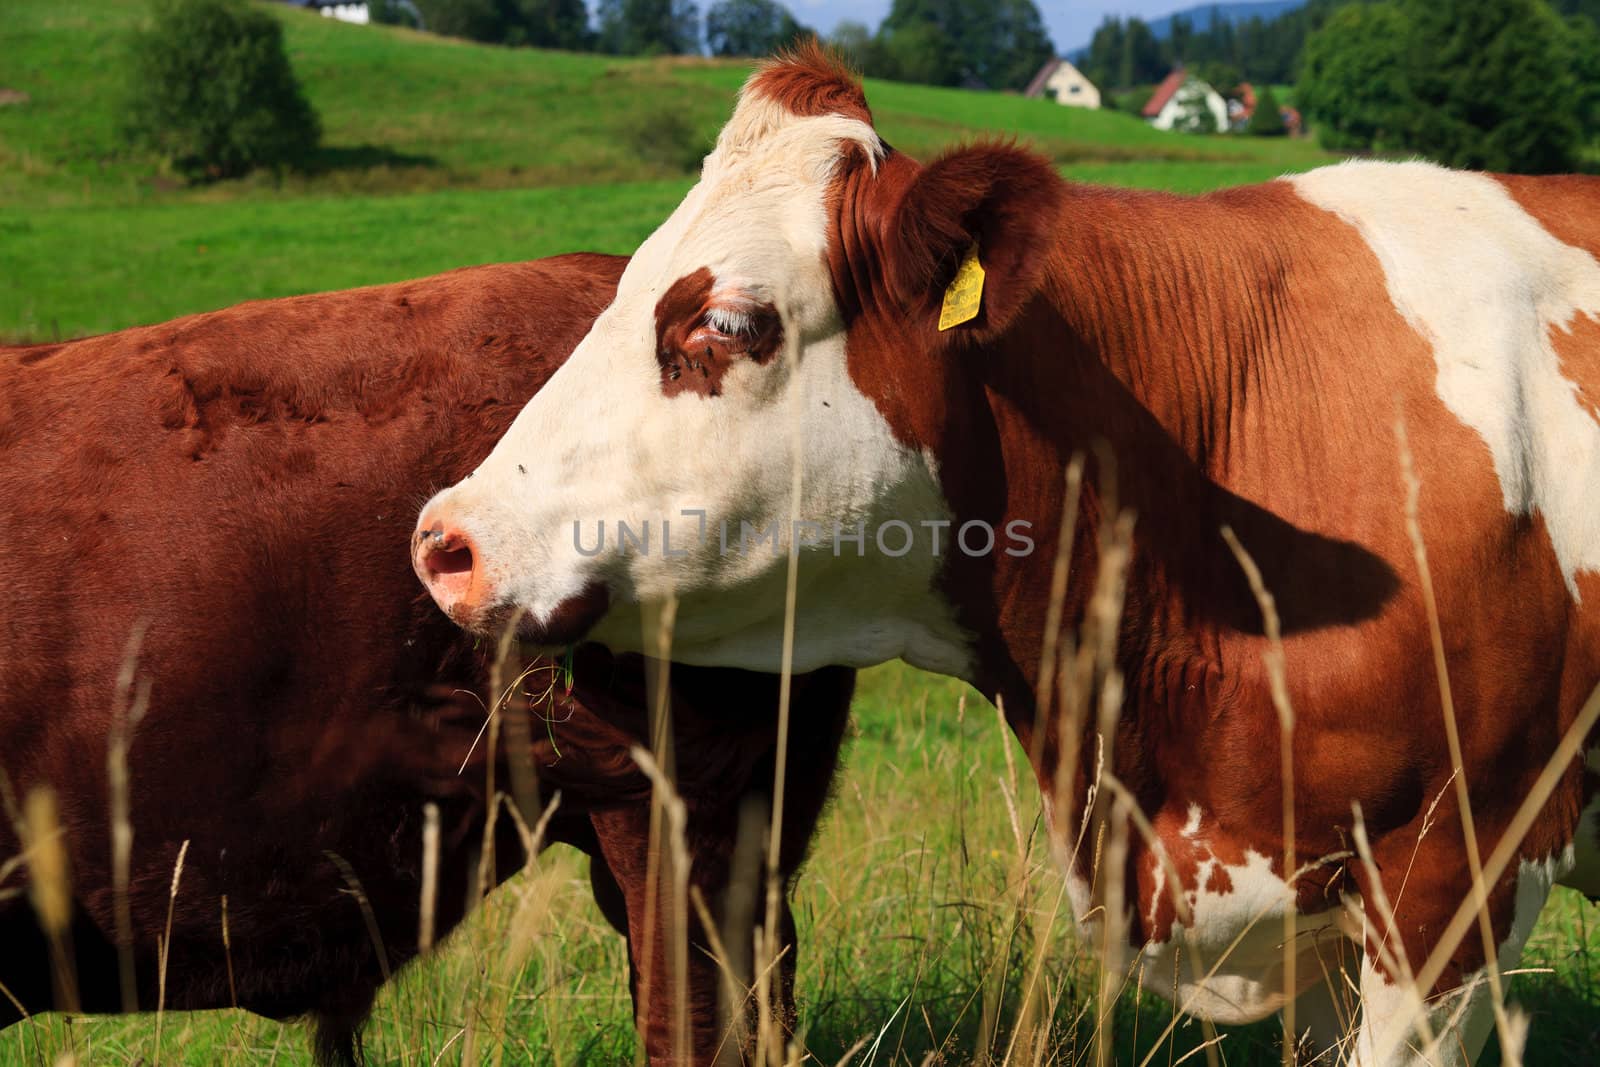 cow on farmland, in summer, on suny day